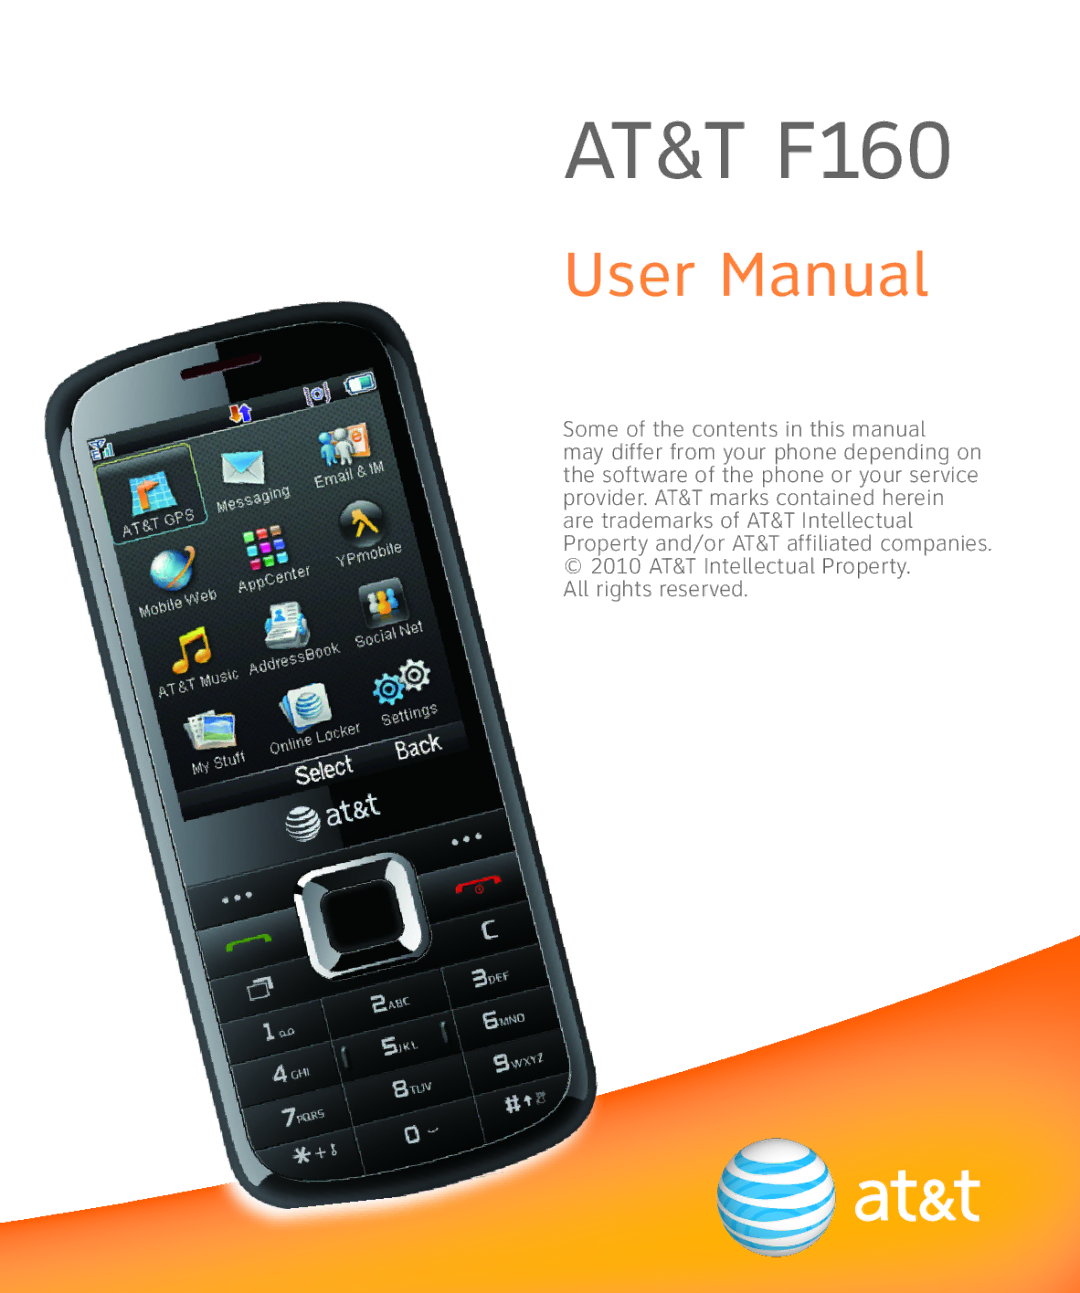 AT&T user manual AT&T F160 